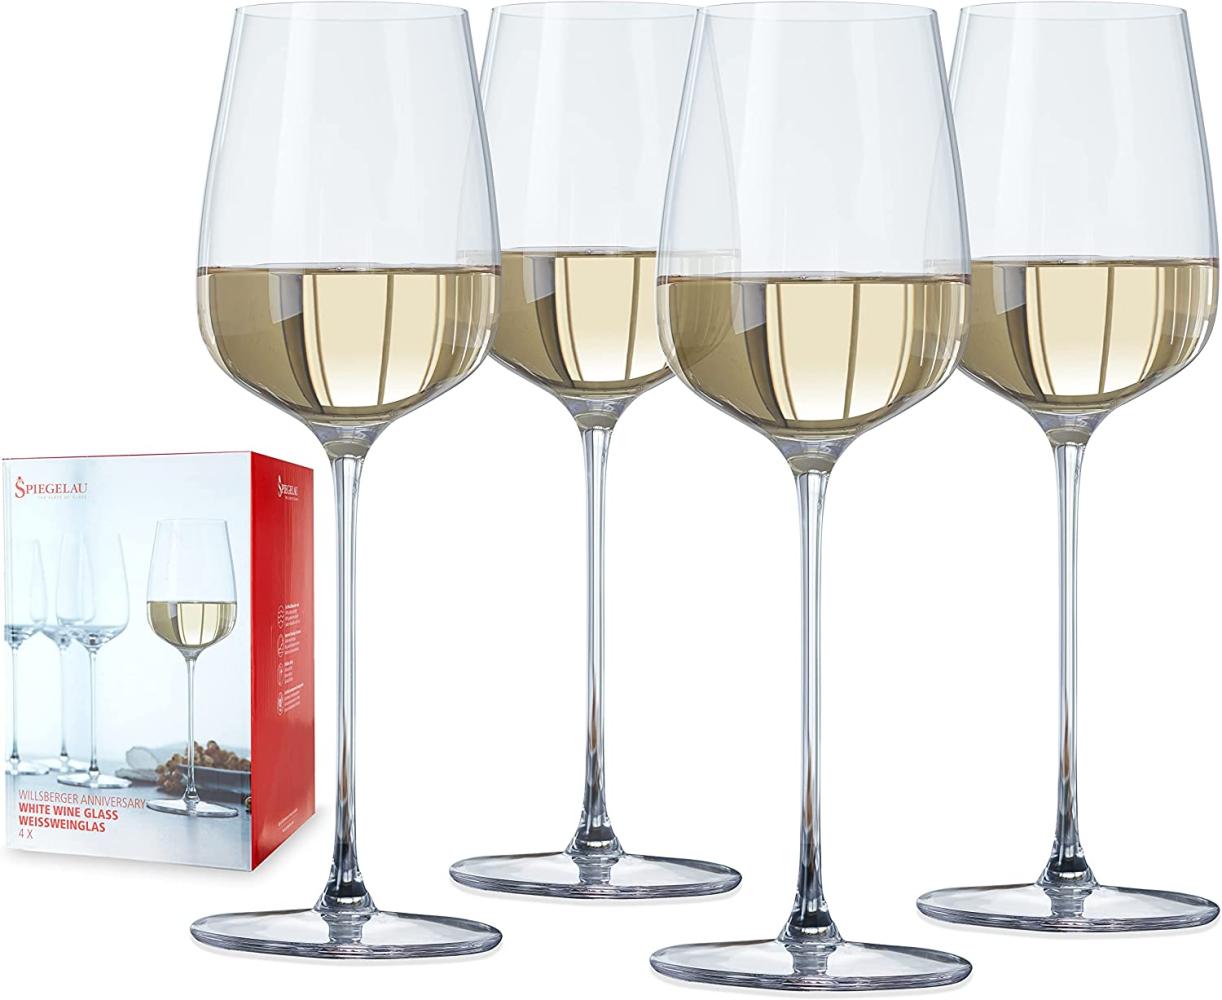 Spiegelau Willsberger Anniversary Weißweinkelch, 4er Set, Weißweinglas, Weinglas, Kristallglas, 365 ml, 1416182 Bild 1